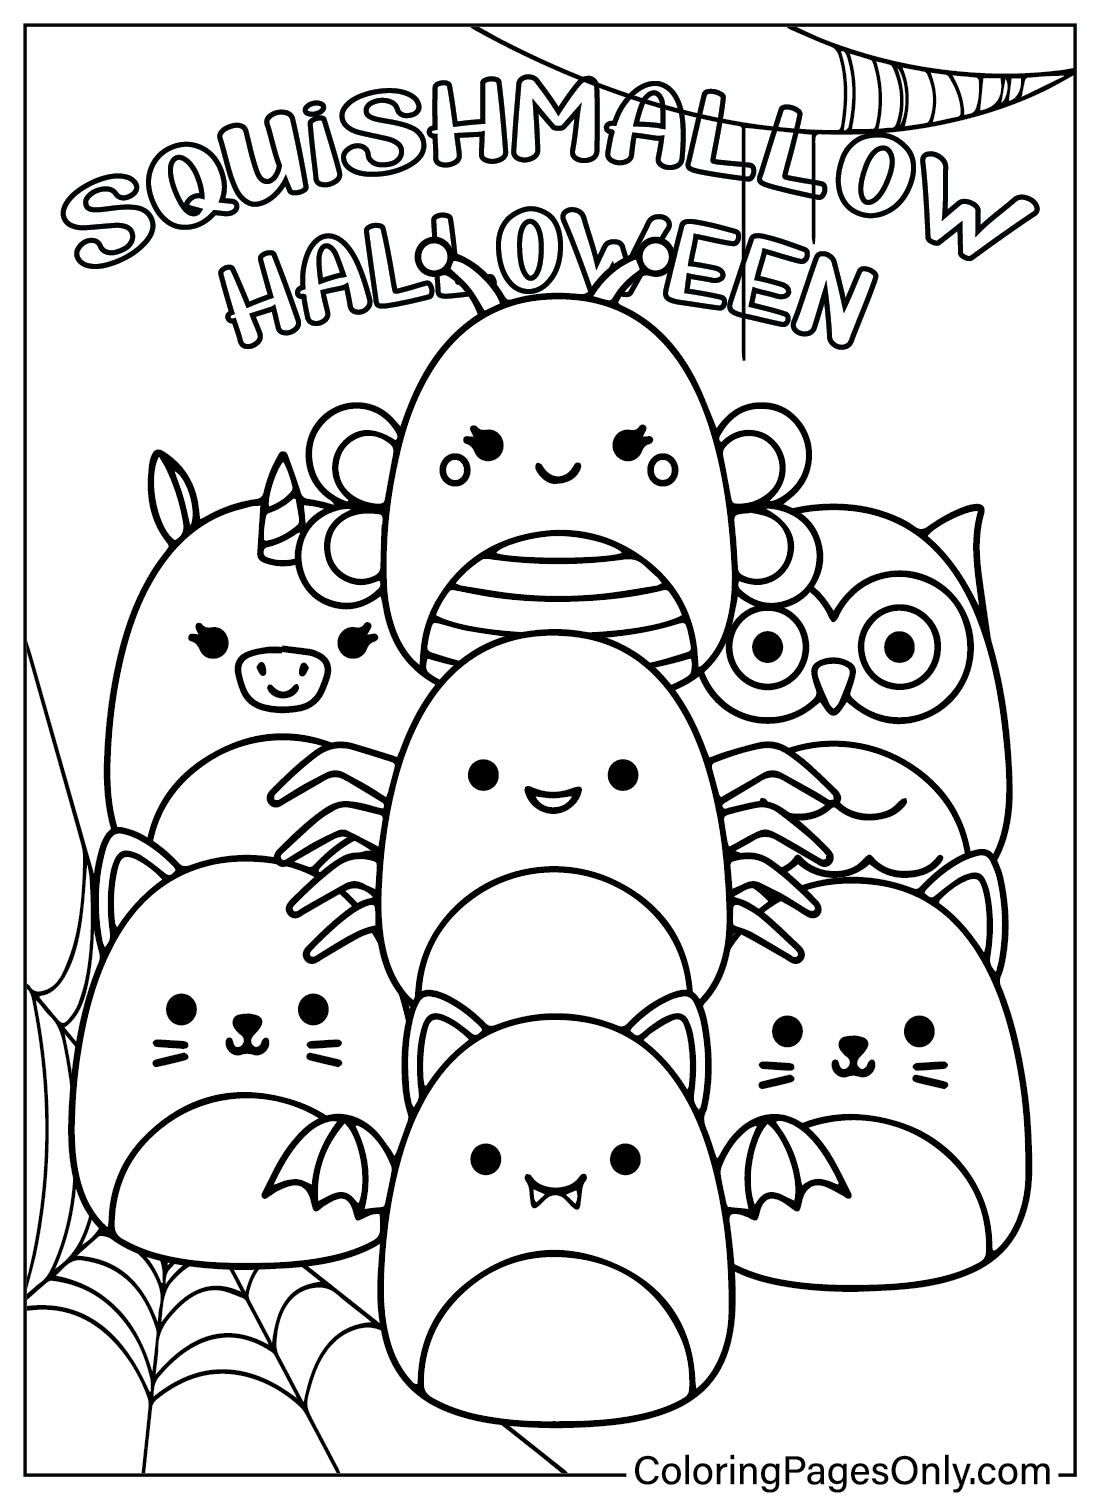 Disegni da colorare di Squishmallow Halloween da Squishmallow Halloween